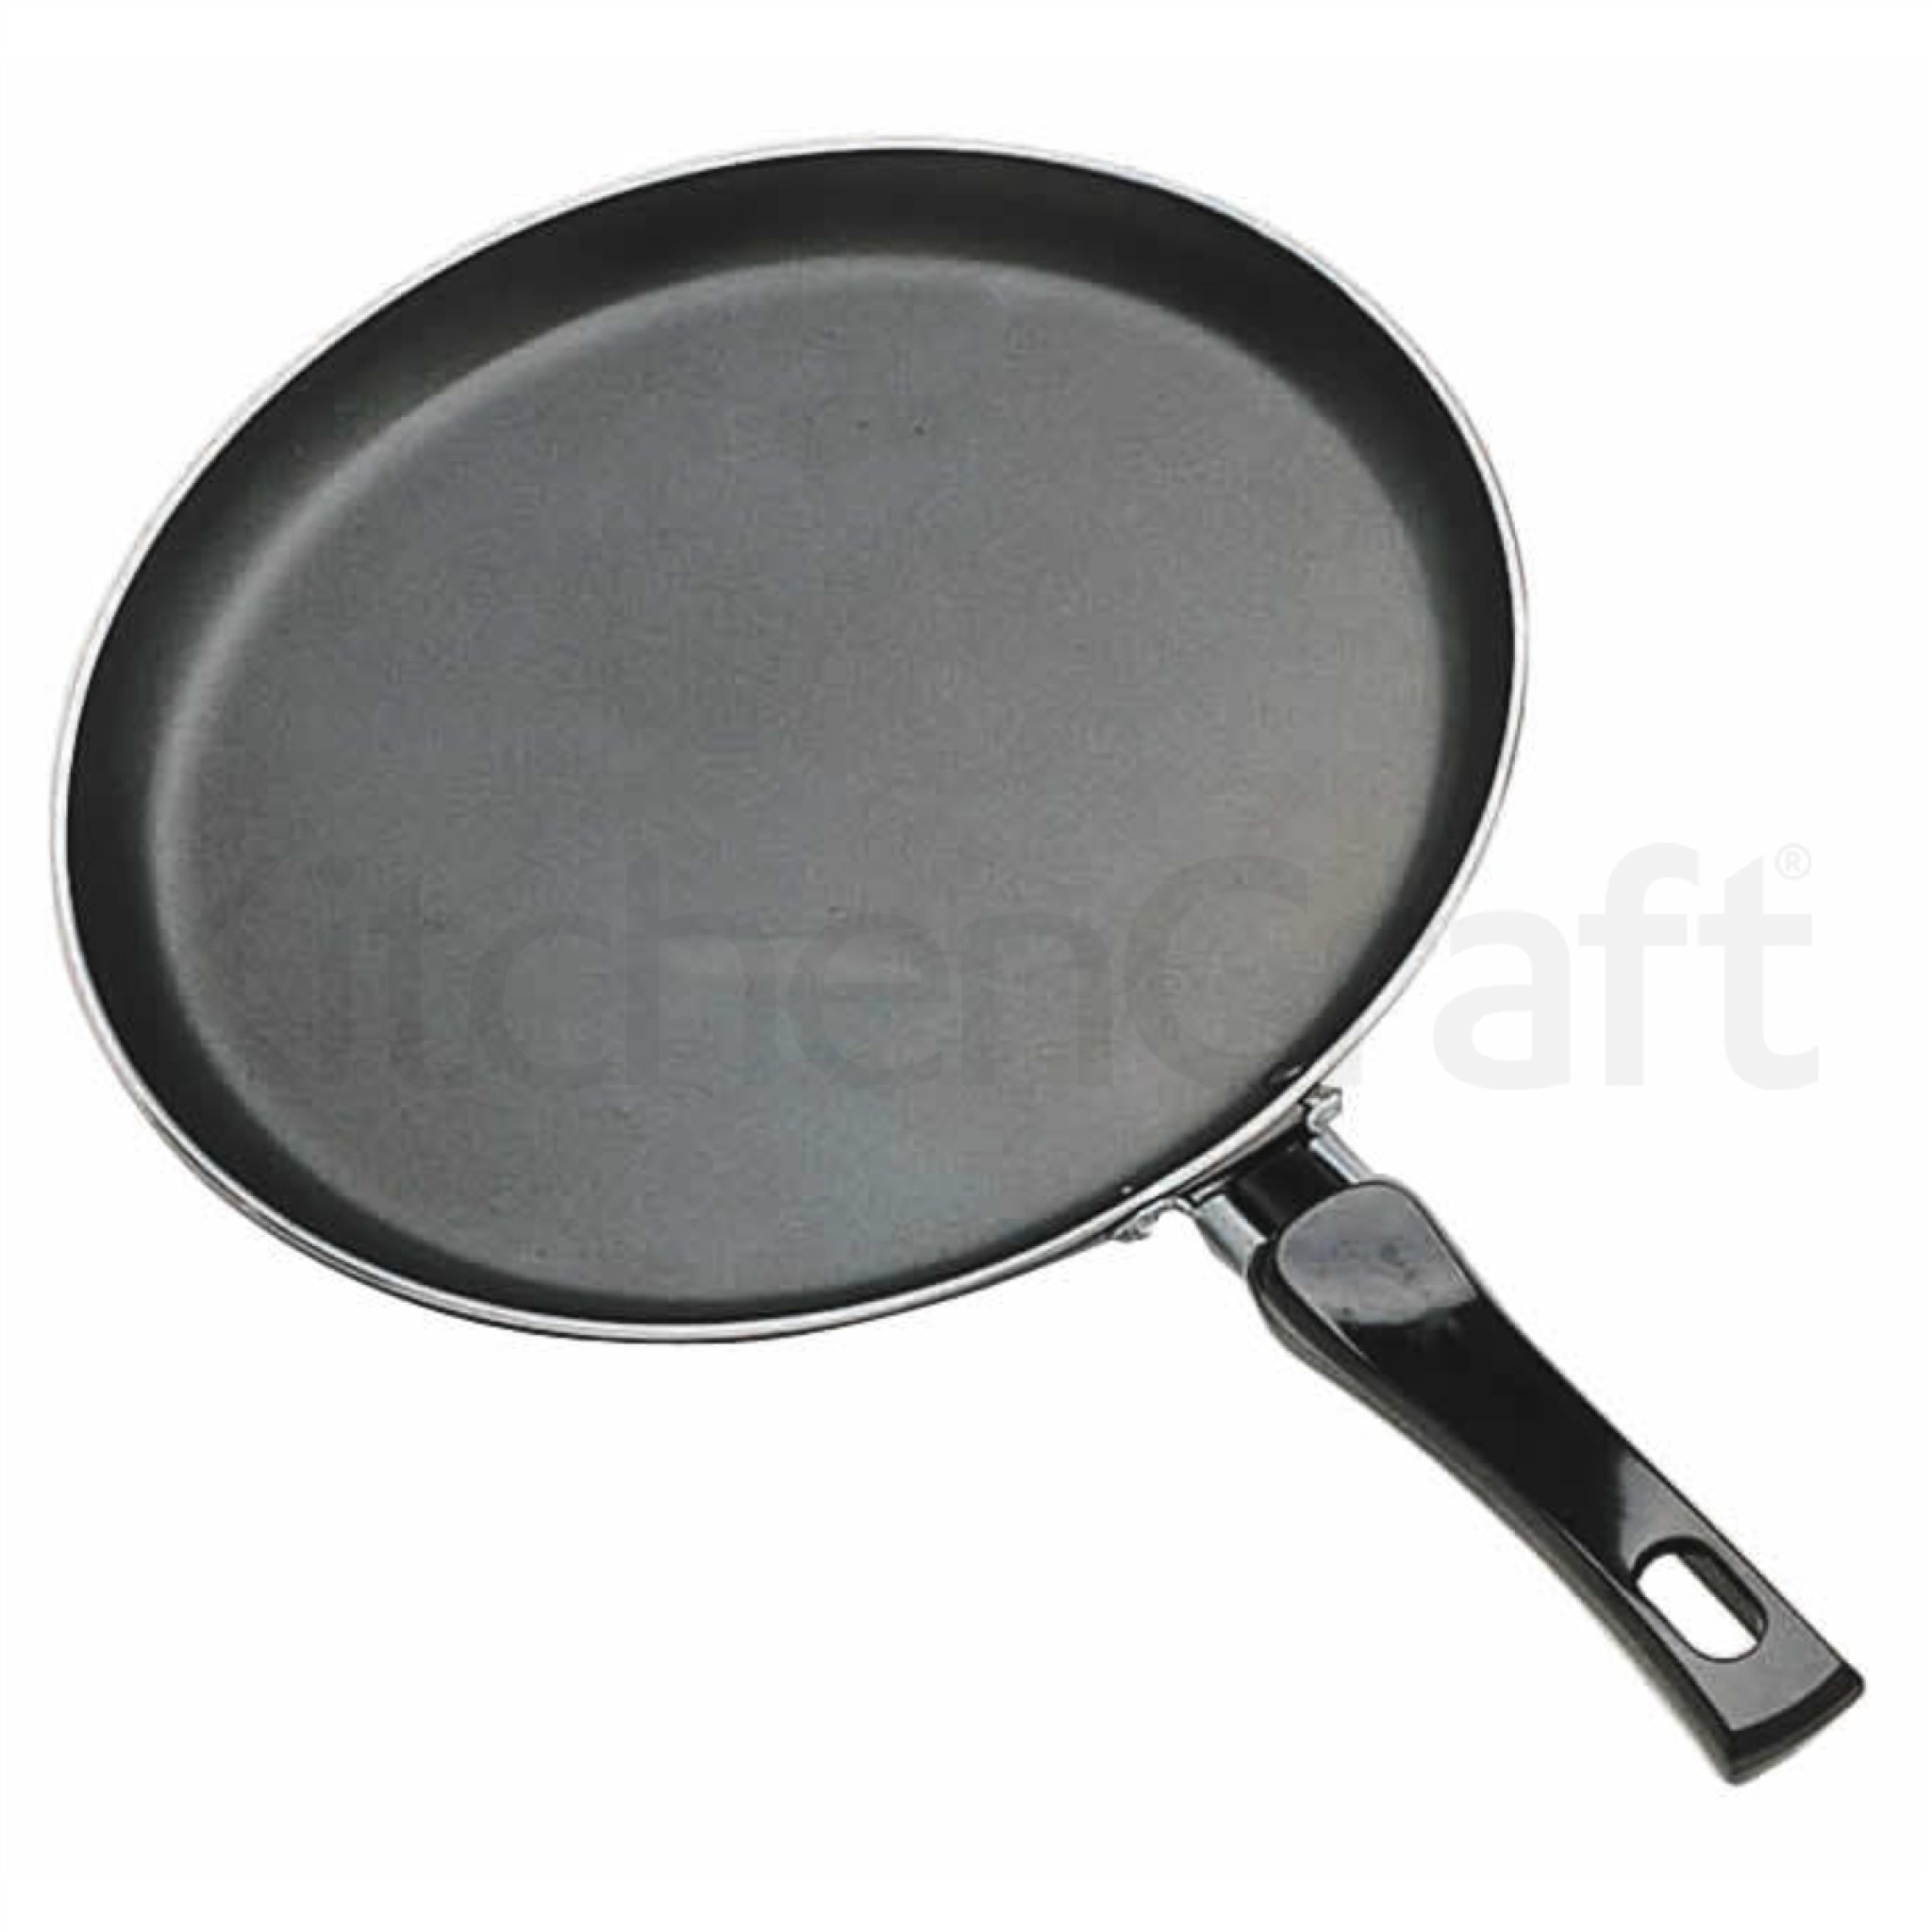 pancake pan